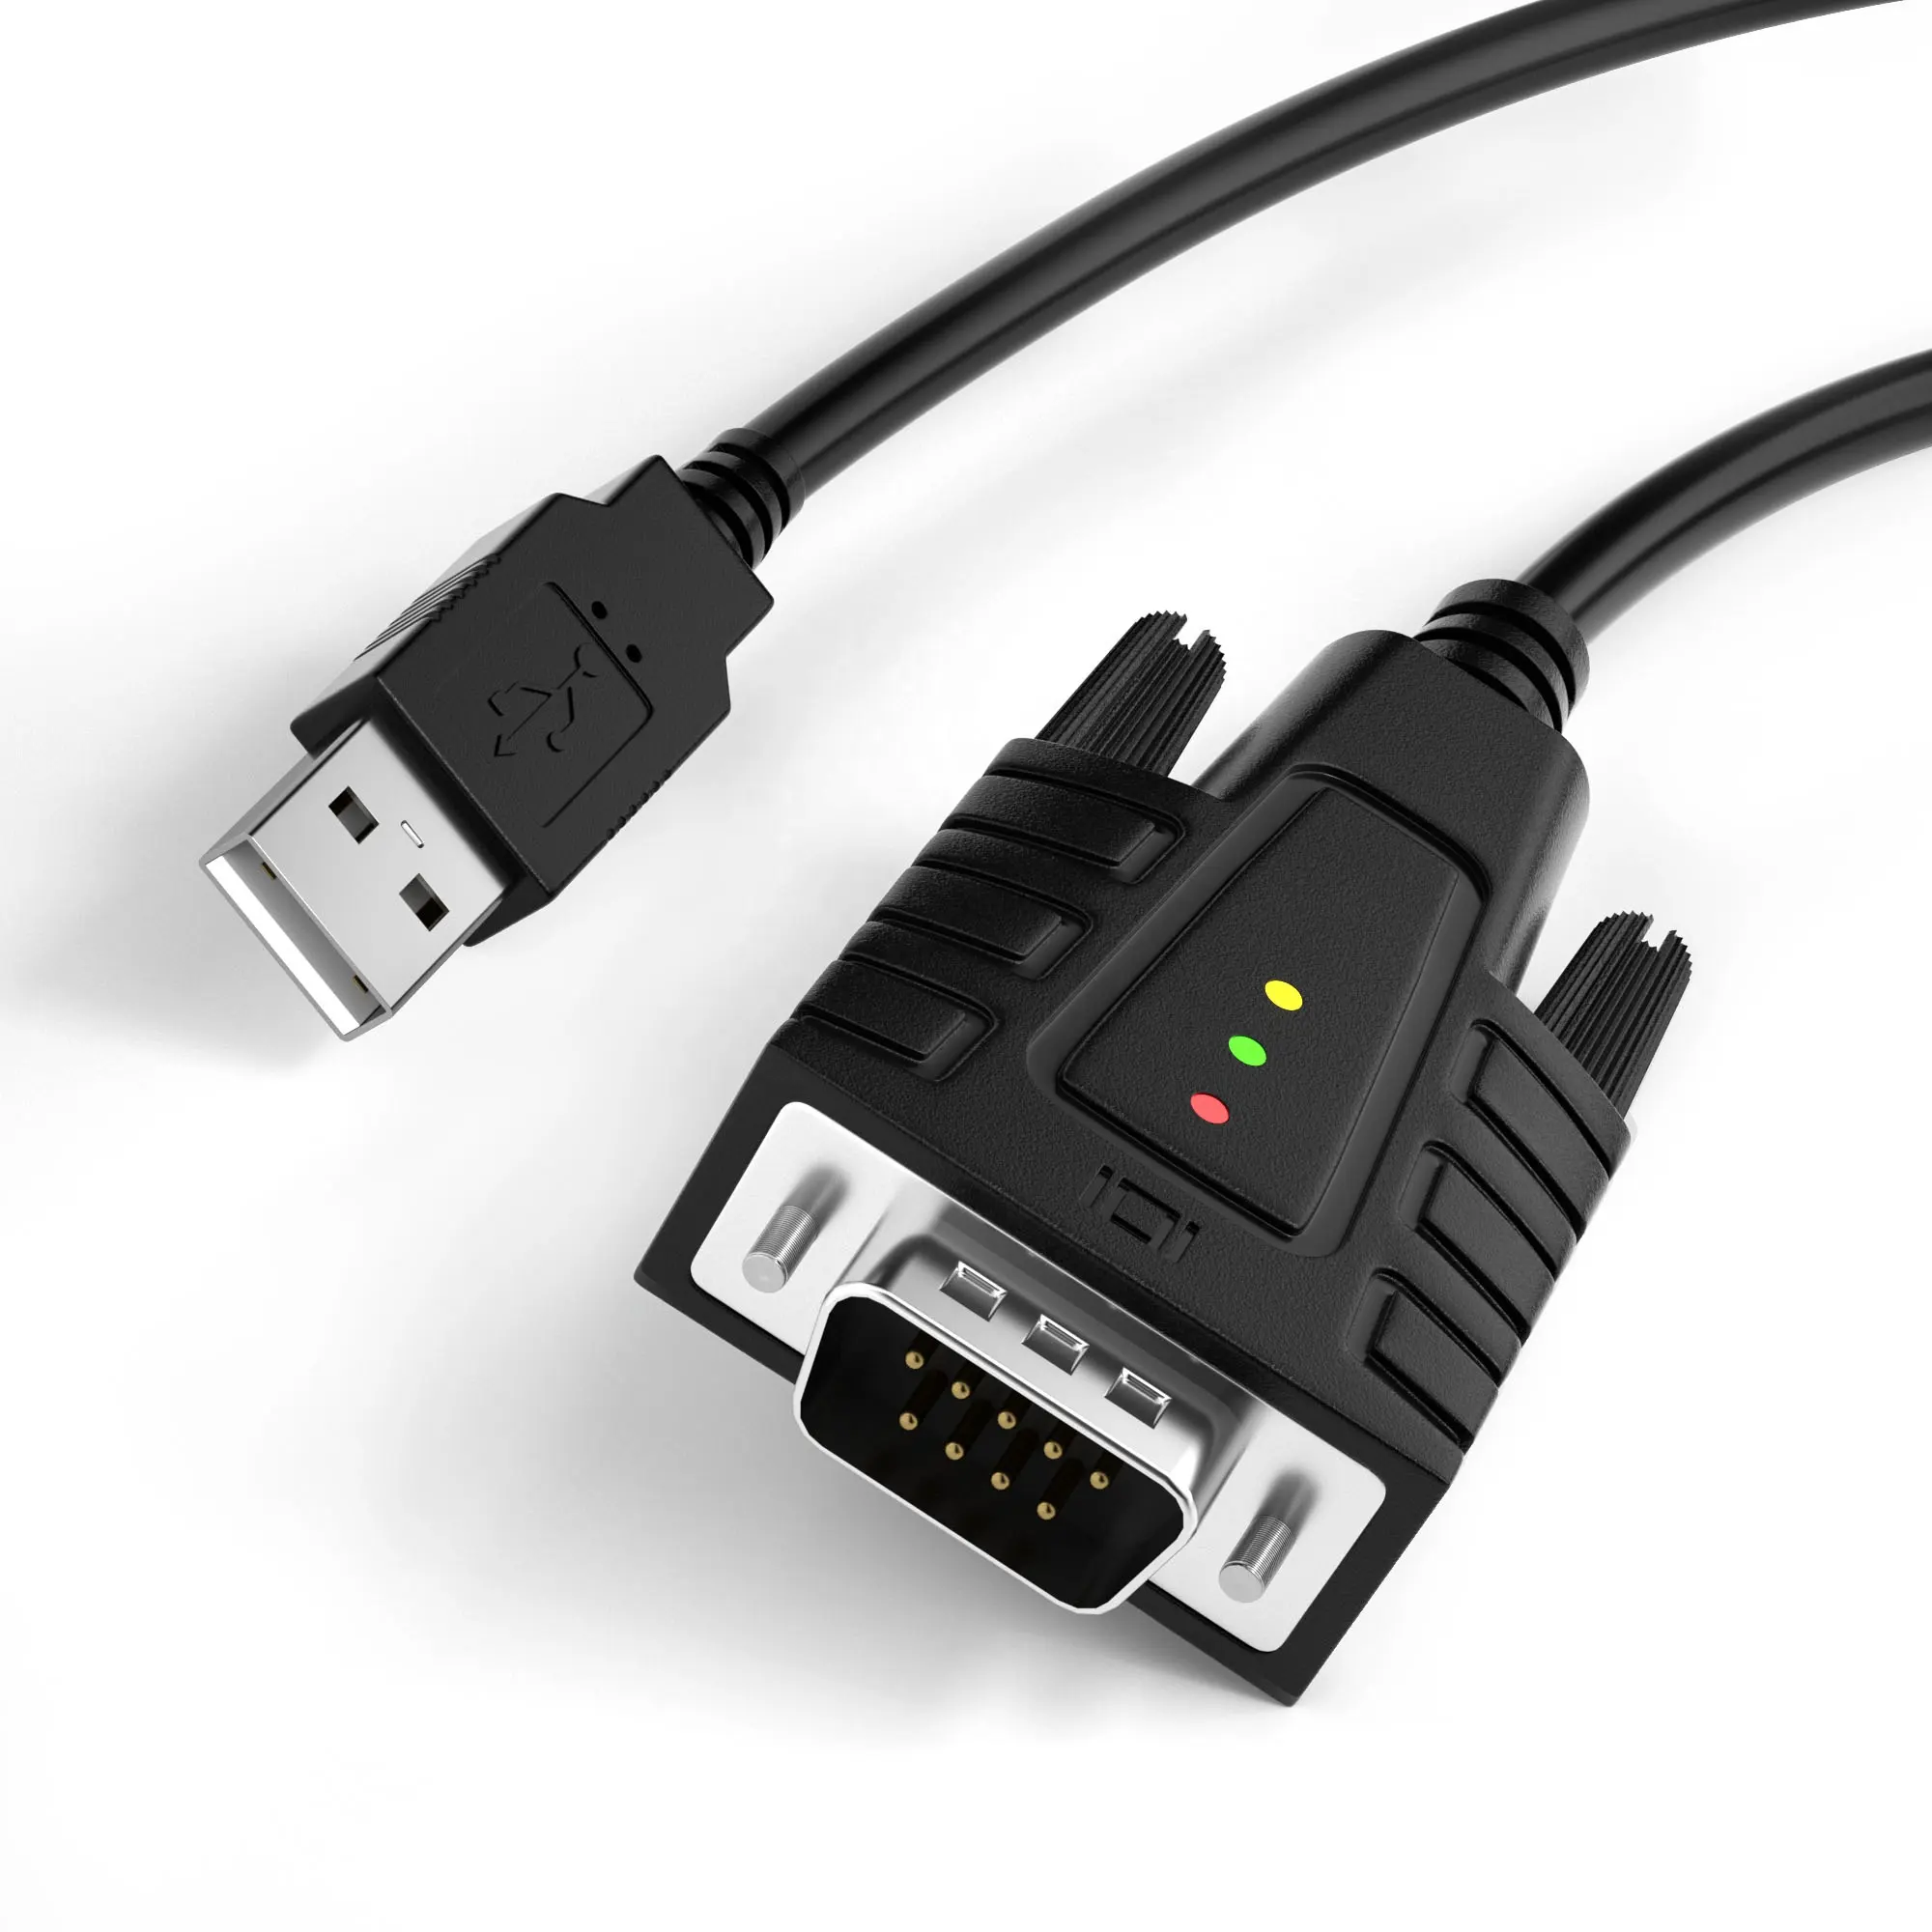 Adattatore cavo seriale da USB a rs232-DriverGenius DB9 convertitore a 9 pin per Modem seriali, Router Cisco, GPS, aggiornamento Firmware